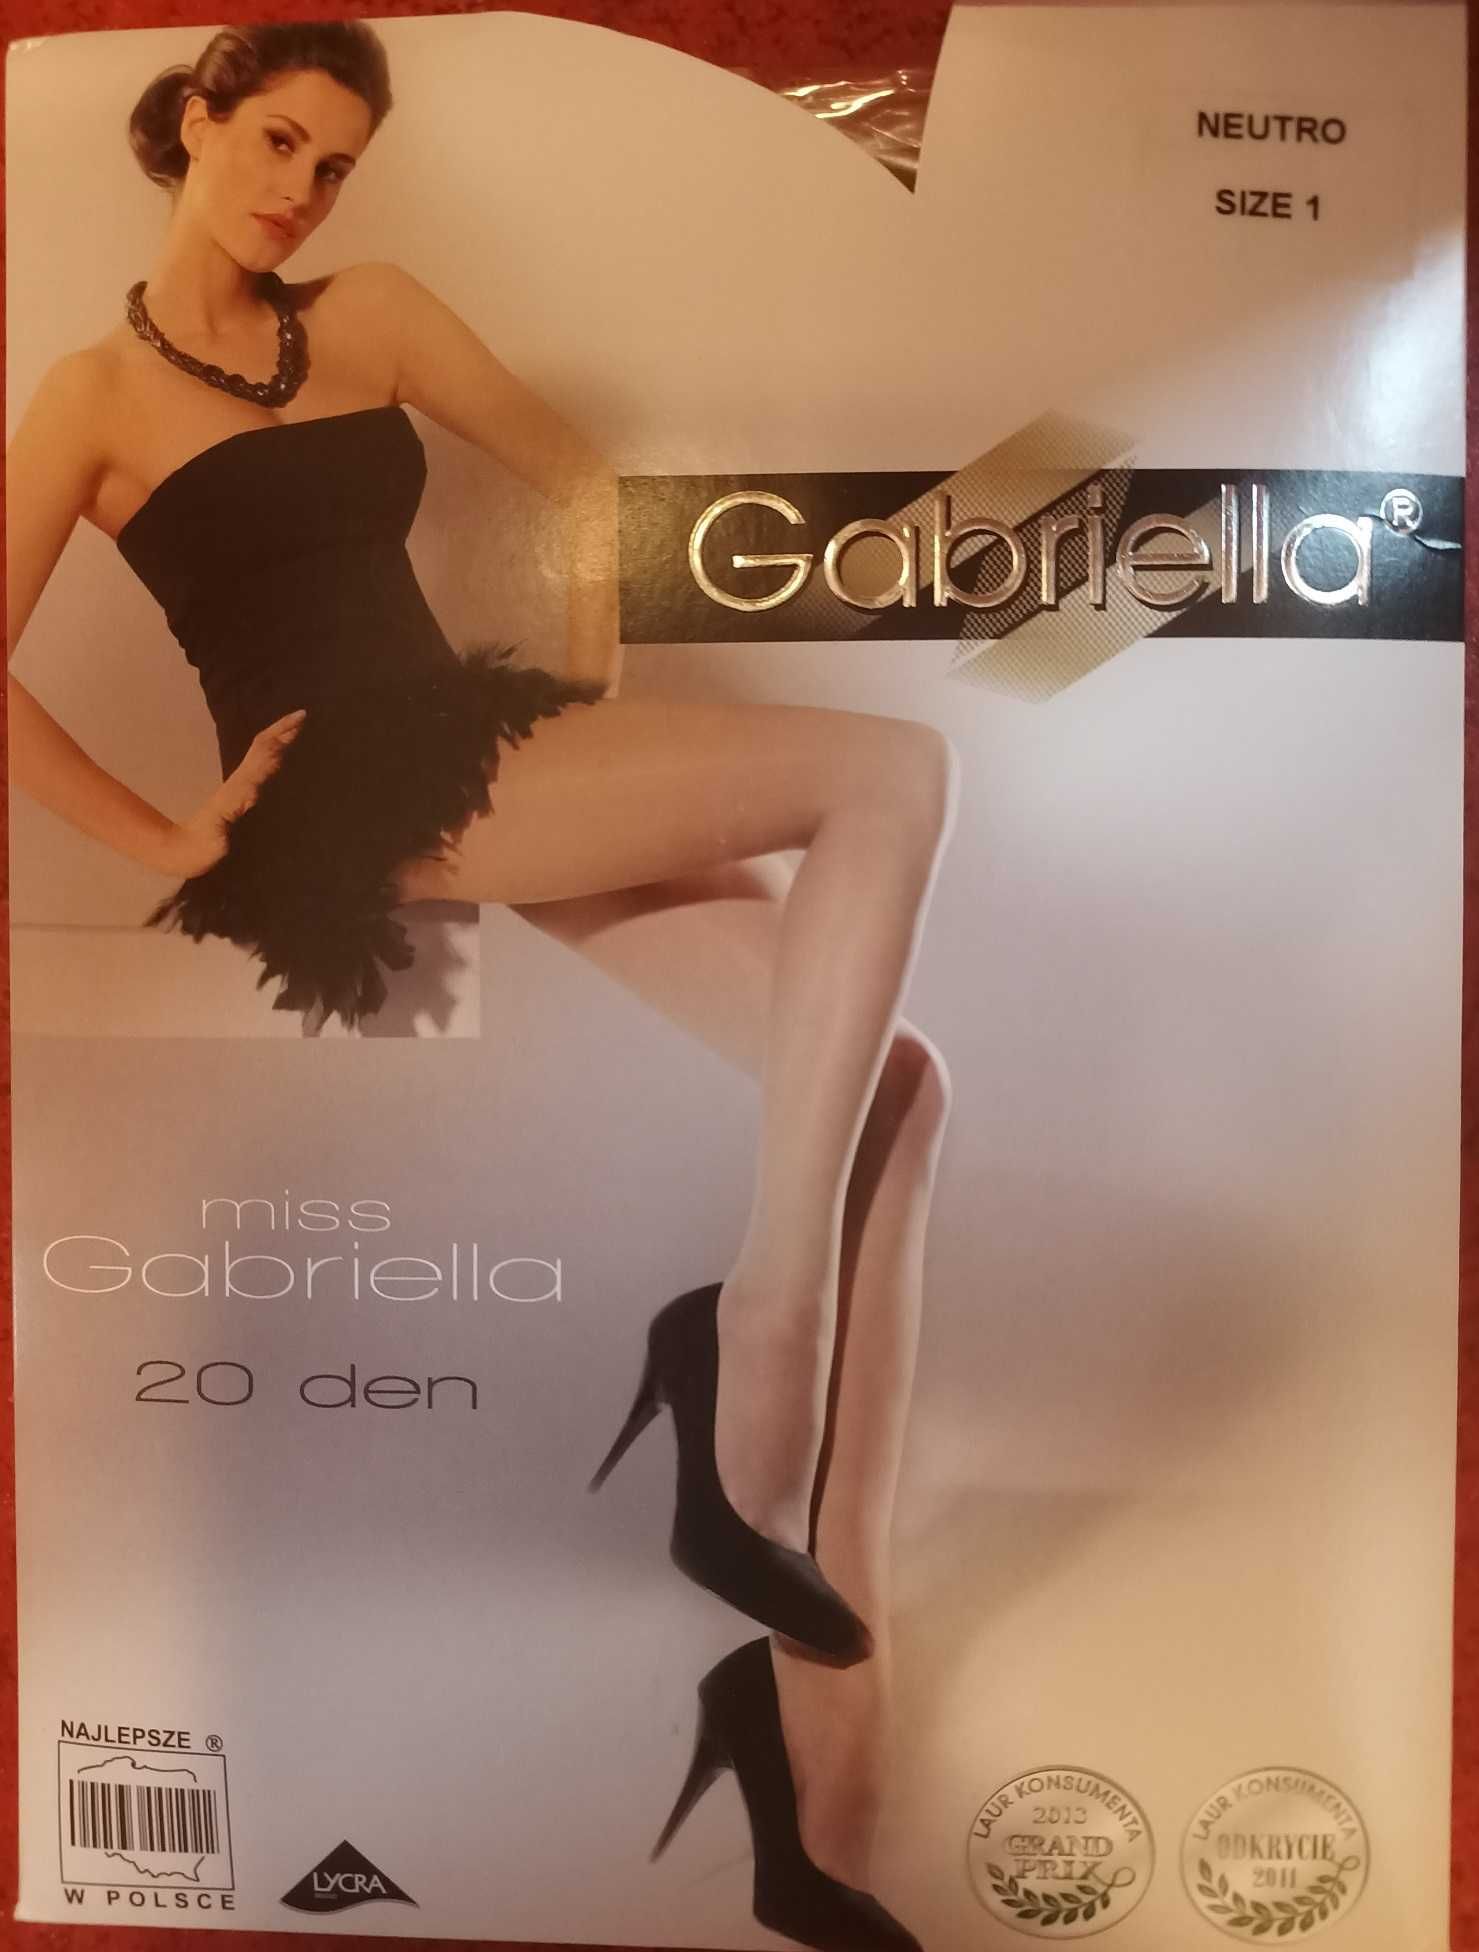 Cienkie rajstopy Gabriella Classic 20 DEN ecri - rozmiar 1/XS - NOWE